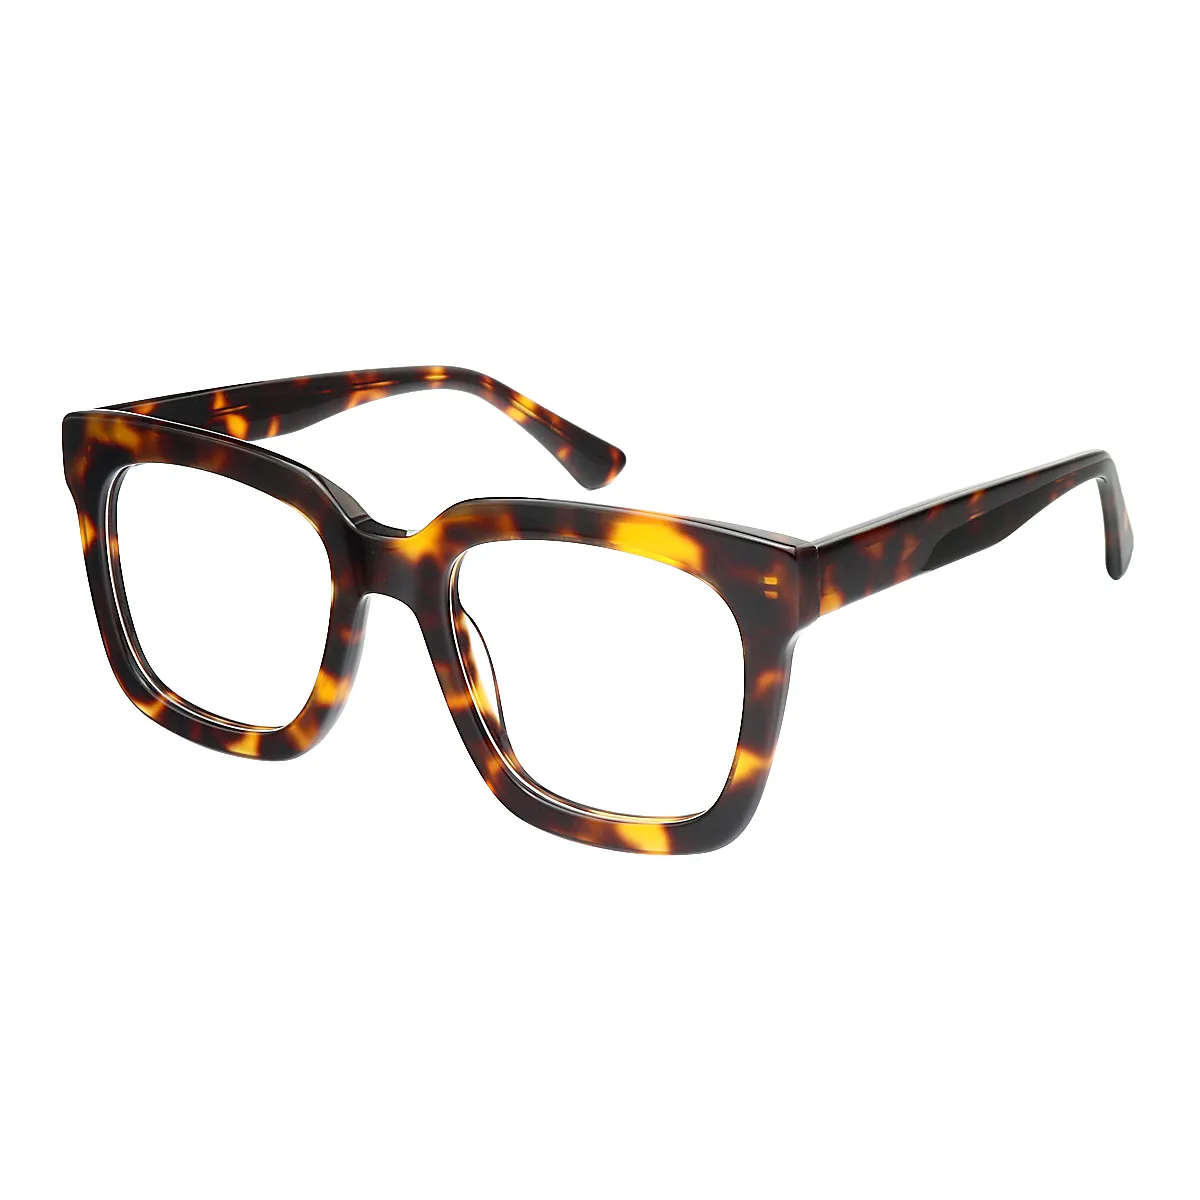 Coxon - Square Tortoiseshell Glasses for Women - EFE